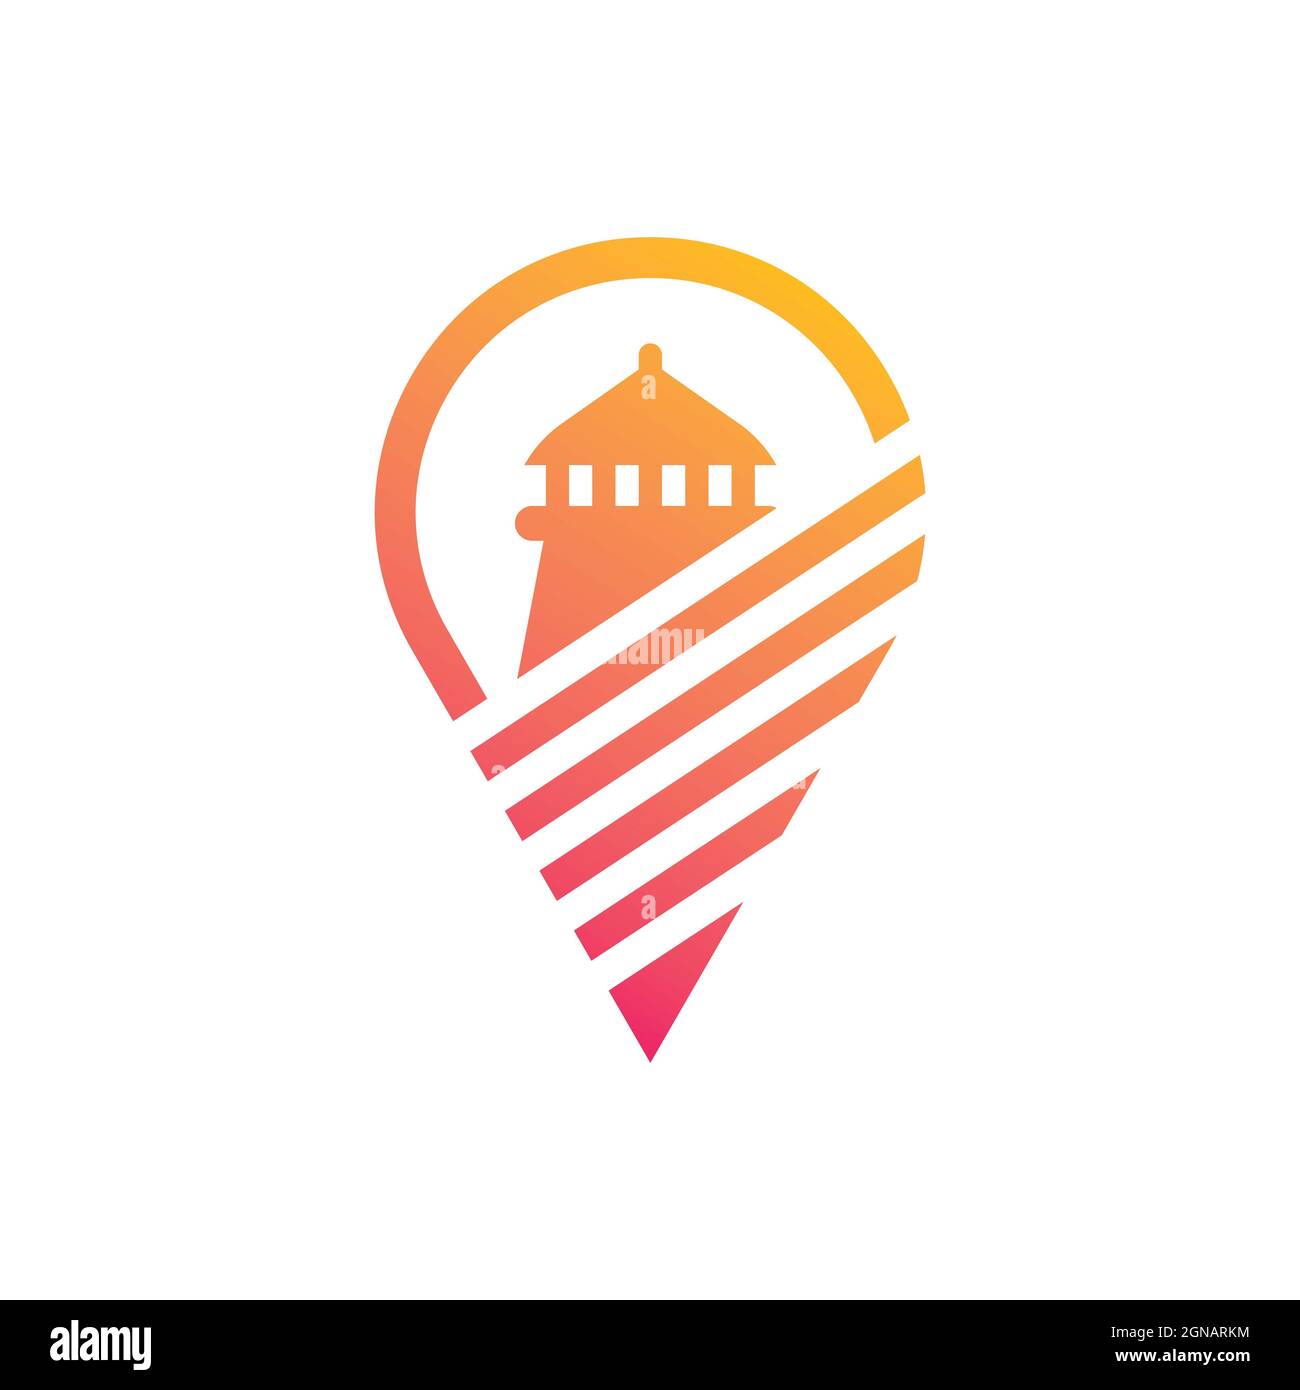 Light house logo template vector icon design Stock Photo